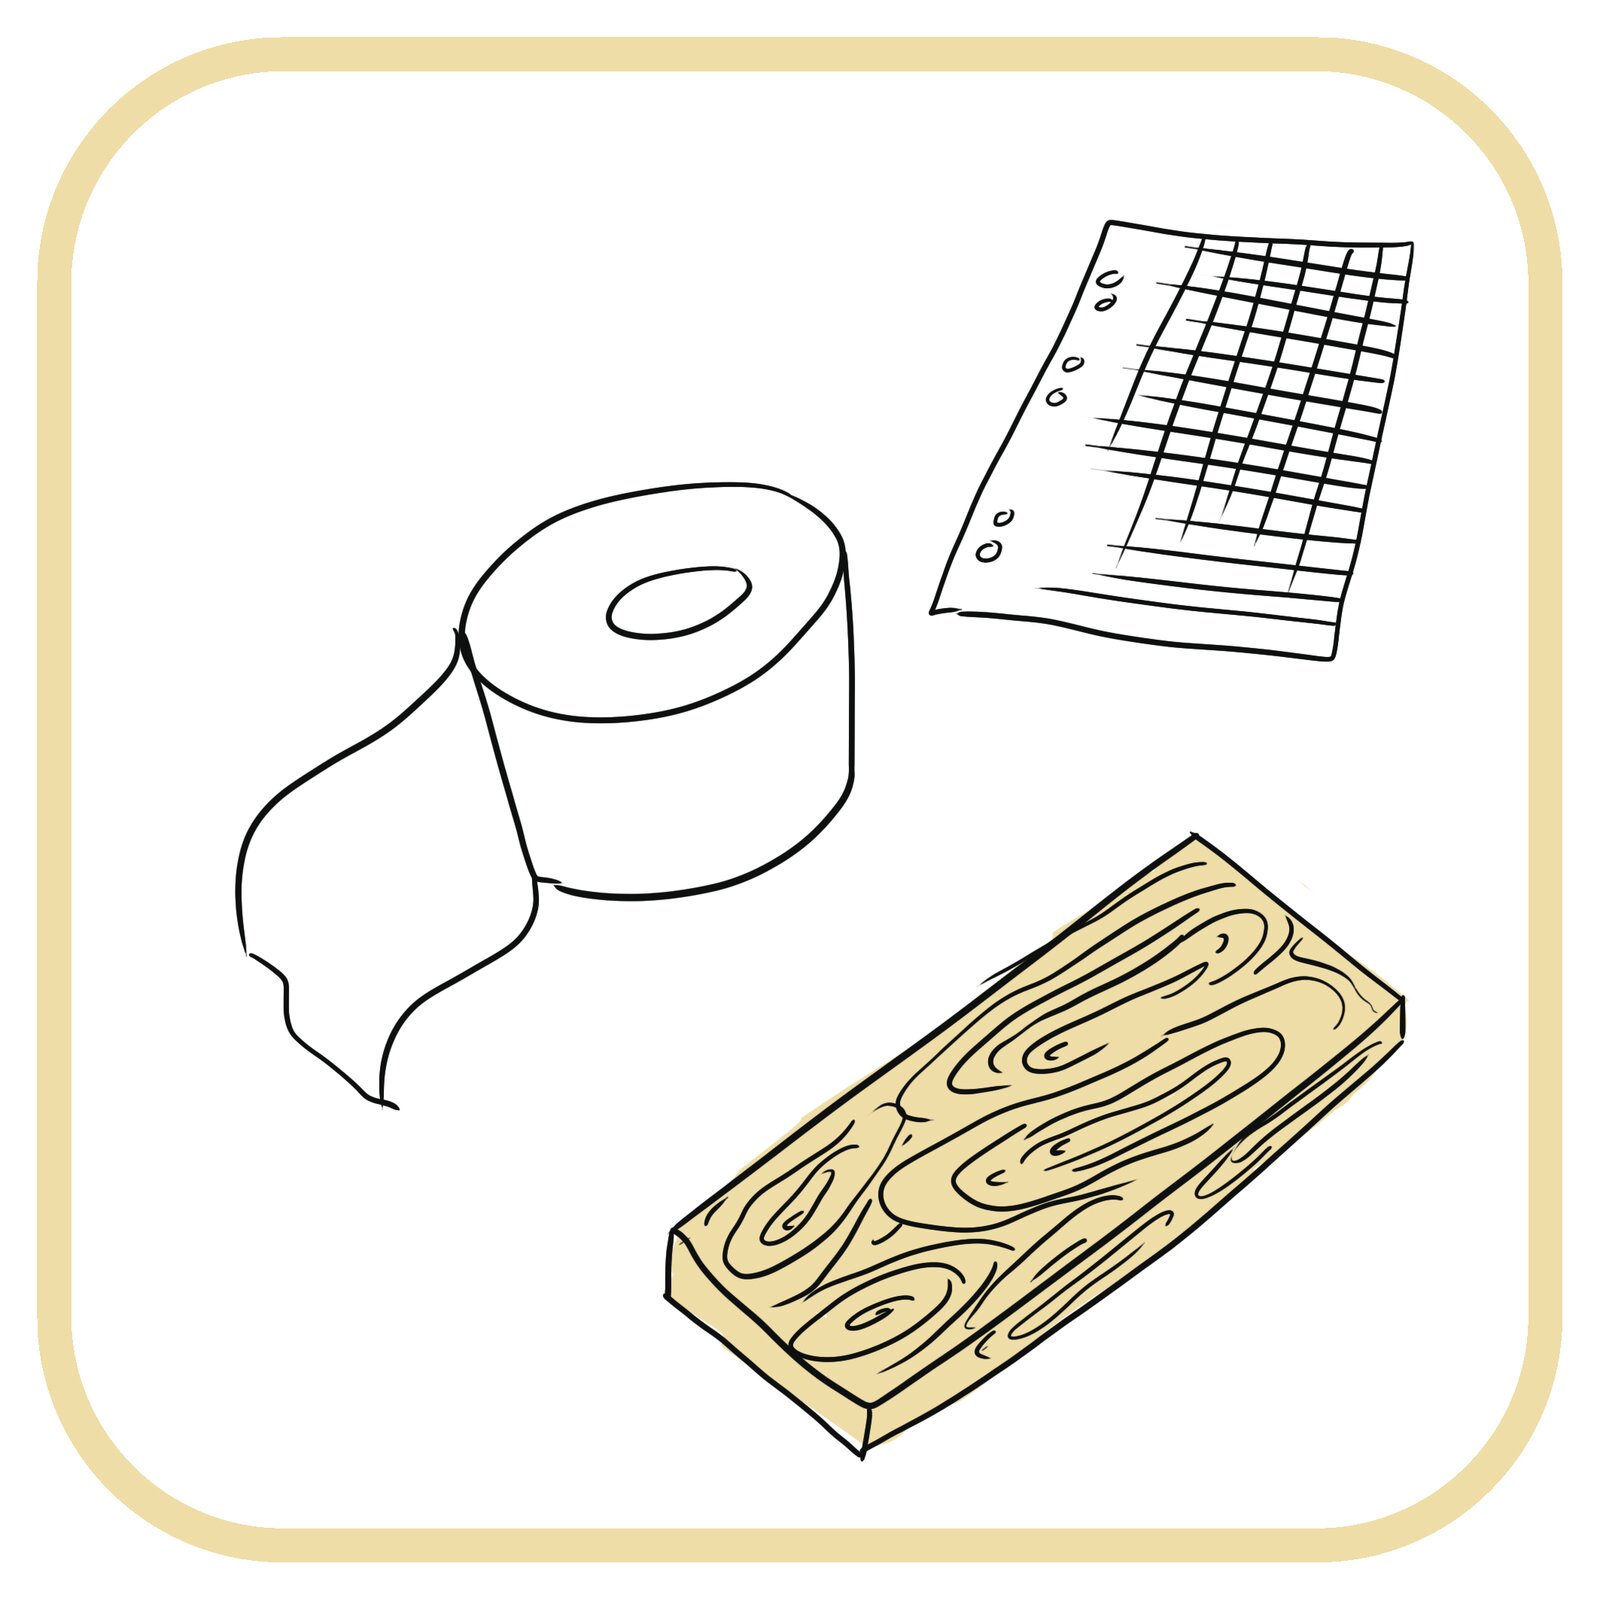 Od lewej: rolka papieru toaletowego, kartka papieru, deska.